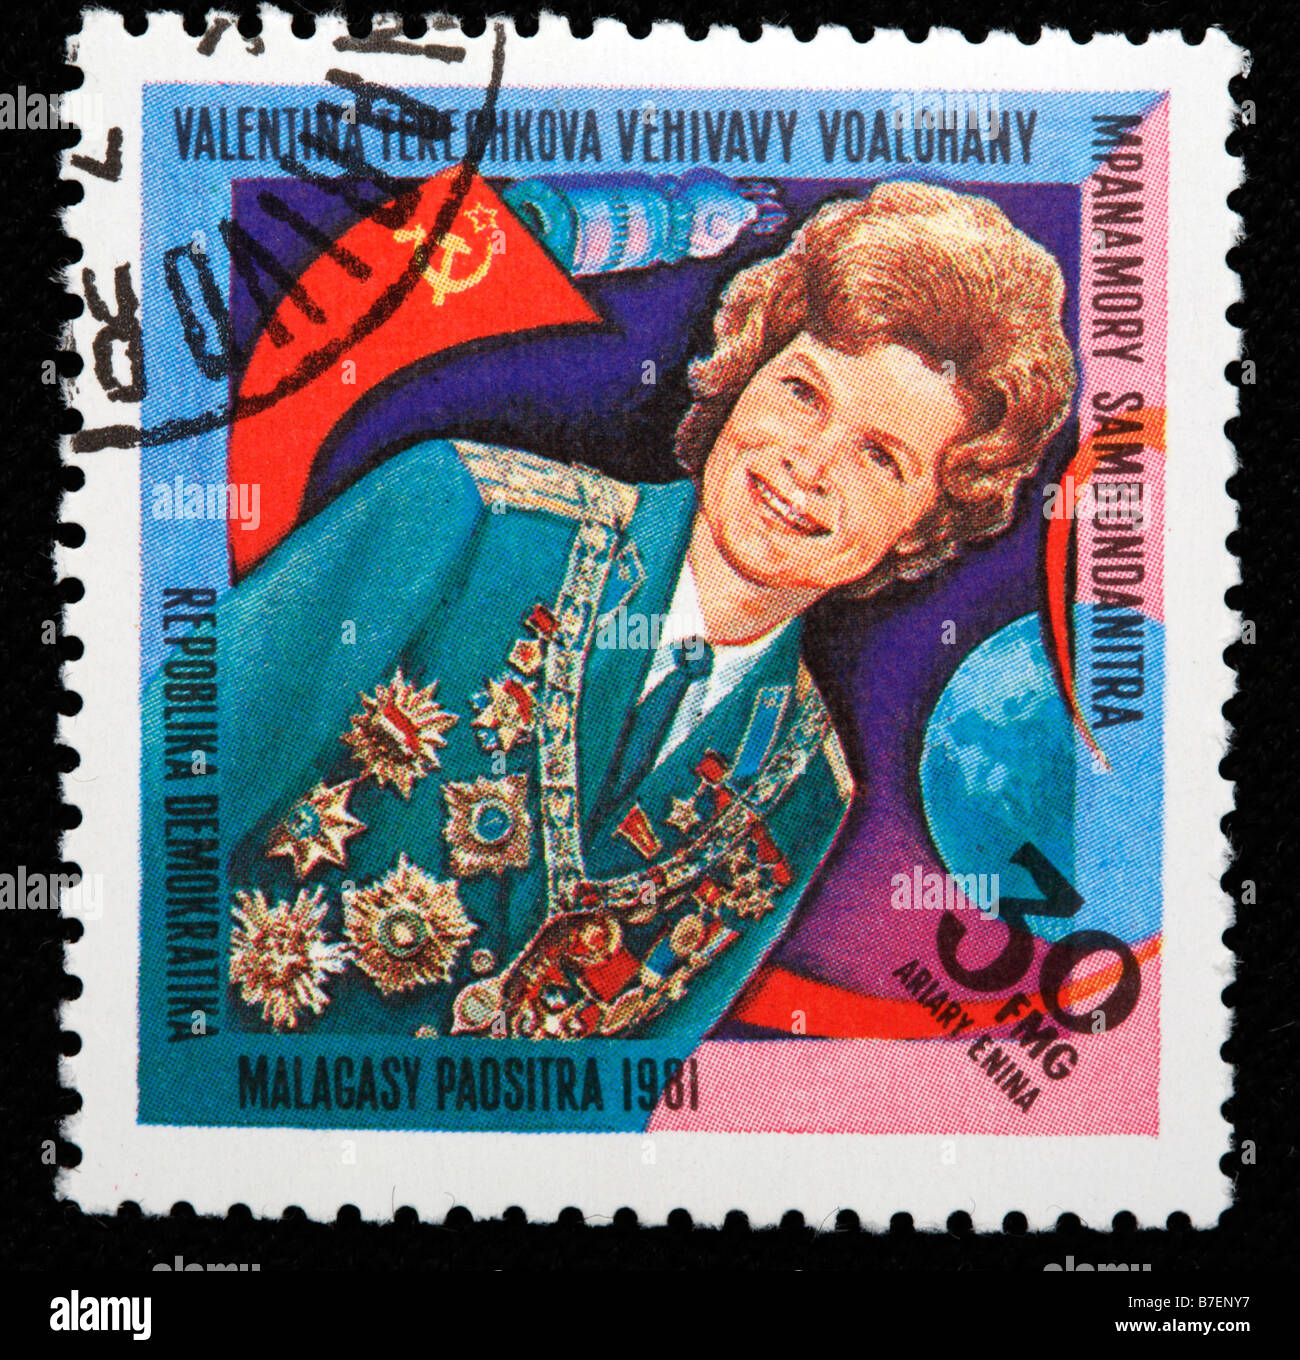 Erstflug der Frau in den Weltraum von Valentina Tereshkova, Briefmarke, Madagassen, 1981 Stockfoto